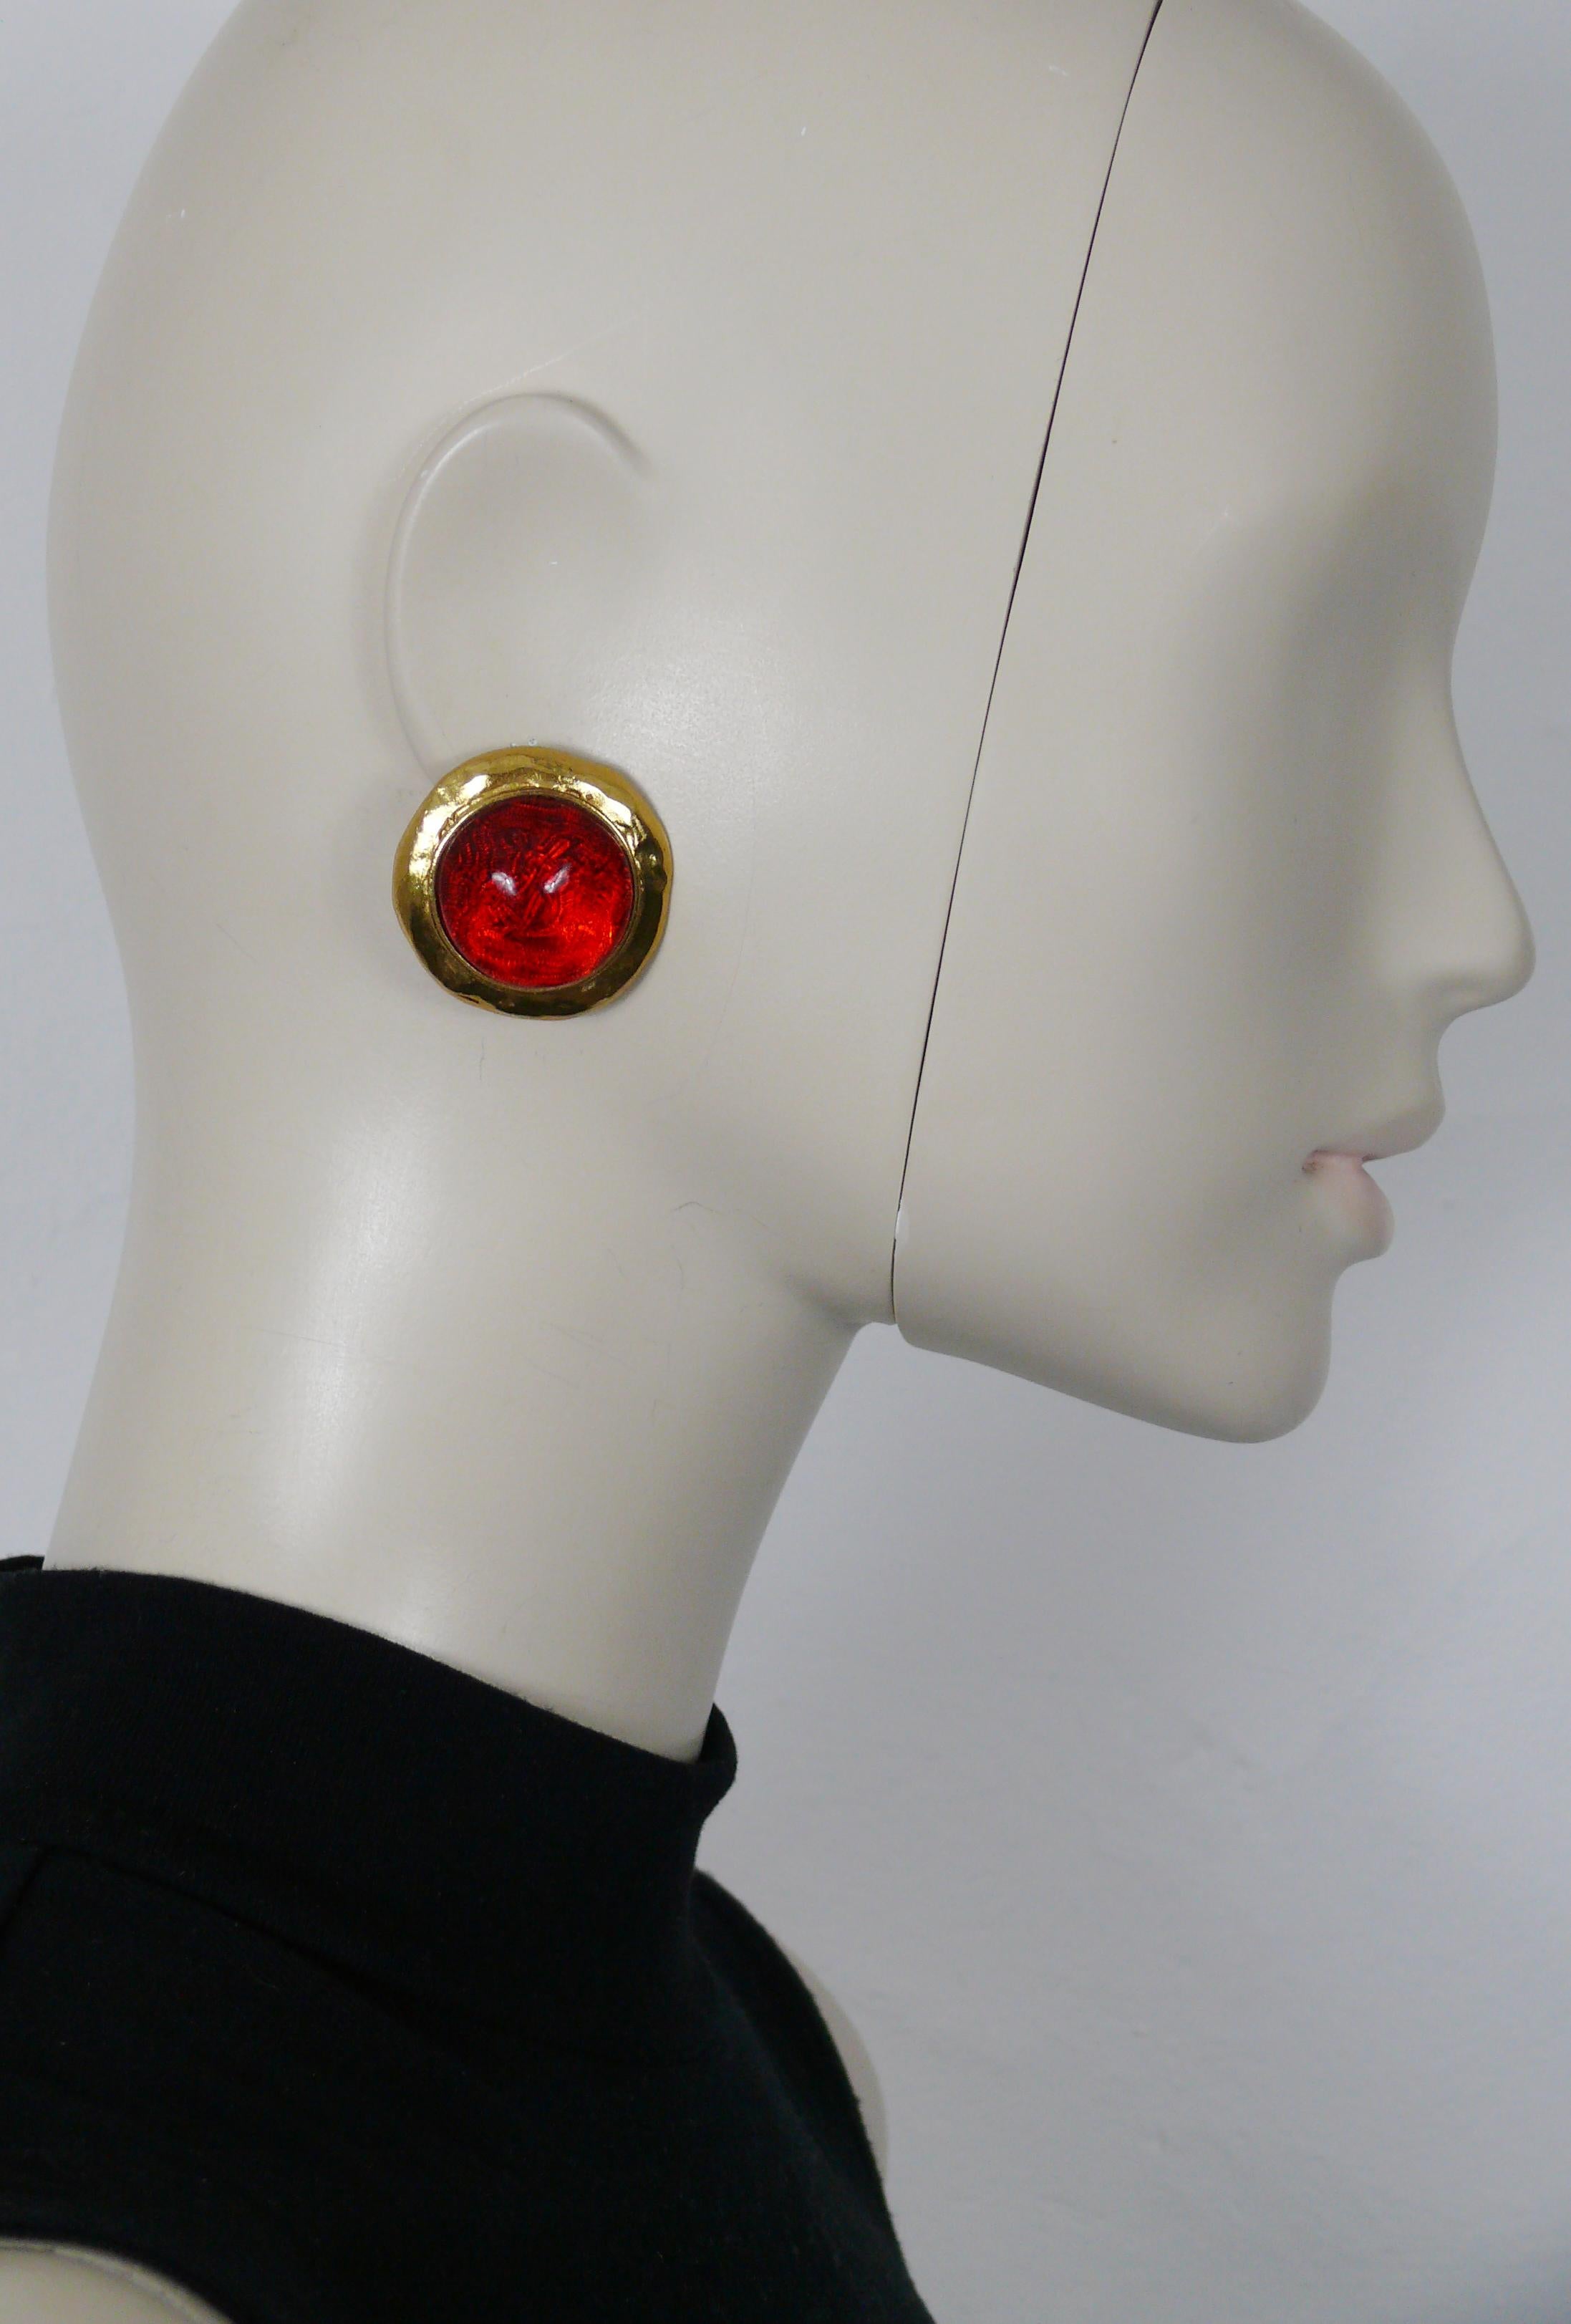 YVES SAINT LAURENT Vintage-Ohrringe mit goldfarbener Struktur und einem roten gewölbten Harz-Cabochon mit eingelegtem YSL-Logo.

Geprägtes YSL Made in France.

Ungefähre Maße: ca. 3,3 cm x 3,3 cm (1,30 Zoll x 1,30 Zoll).

Gewicht pro Ohrring: ca. 15